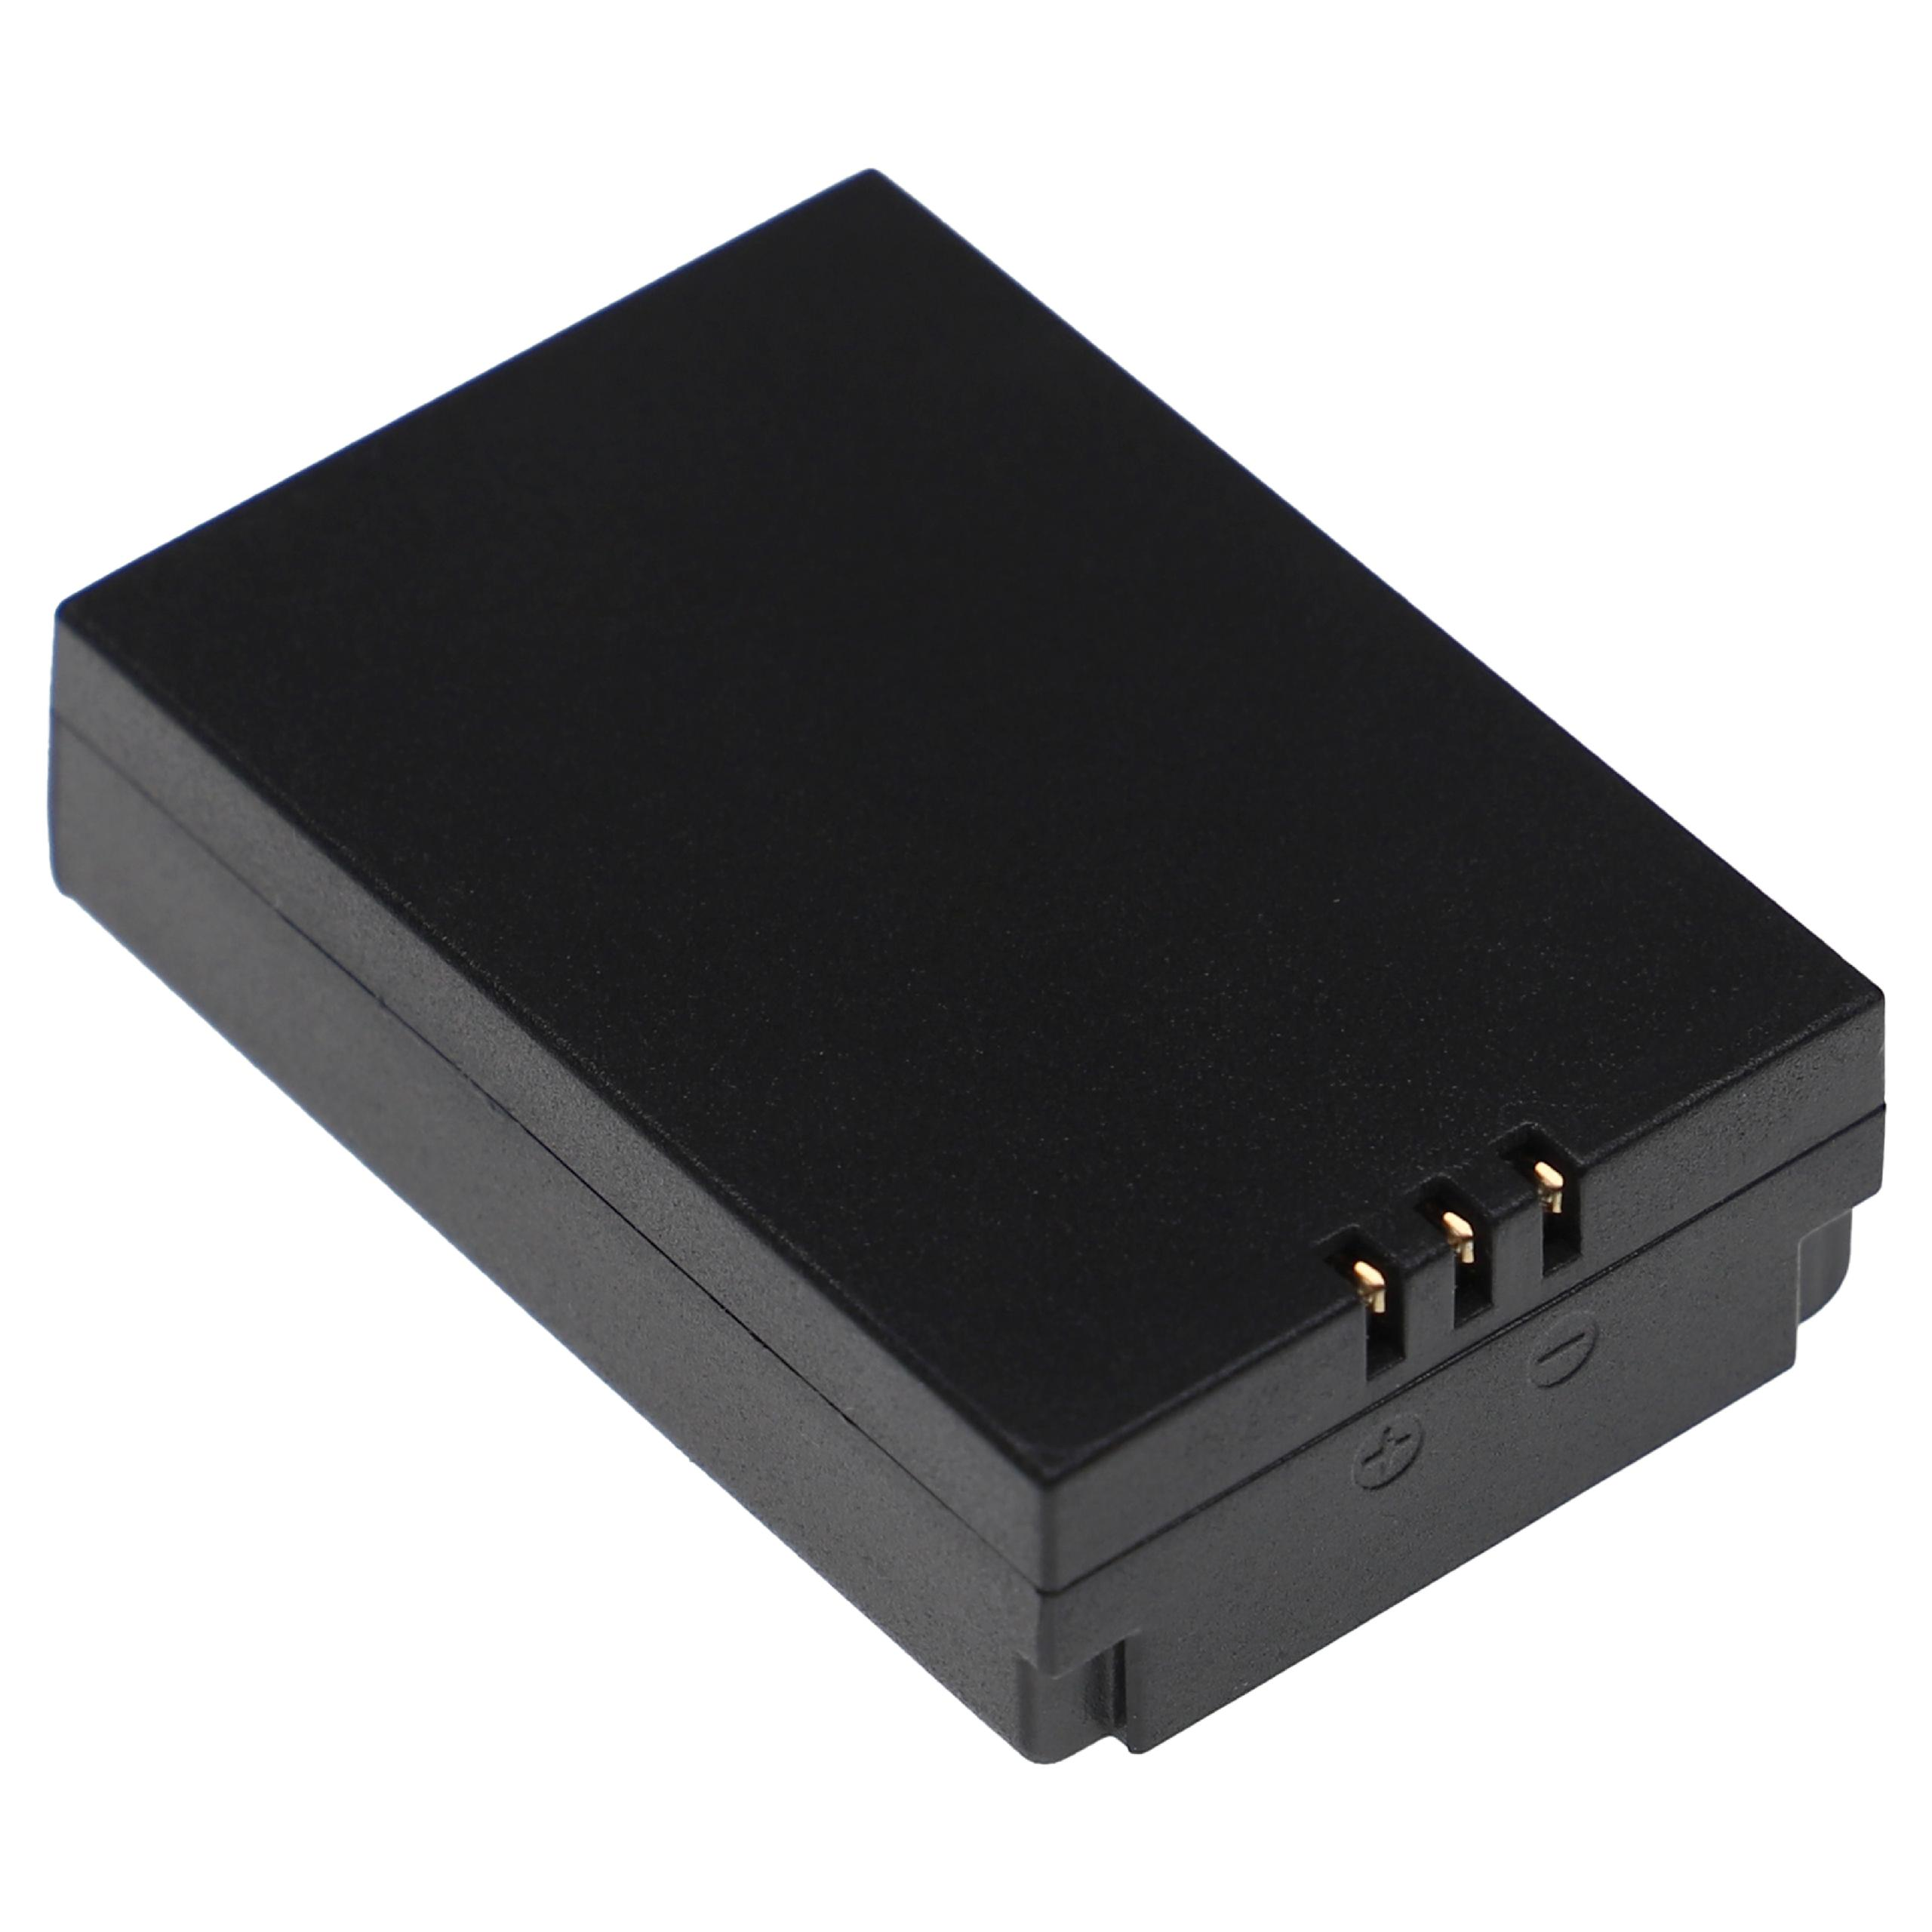 VHBW kompatibel mit Akku DT-9880M, Volt, DT-9881 DT-9881M, - Li-Ion Messgerät, DT-9880, CEM 7.4 1200 DT-9850M, DT-9883M